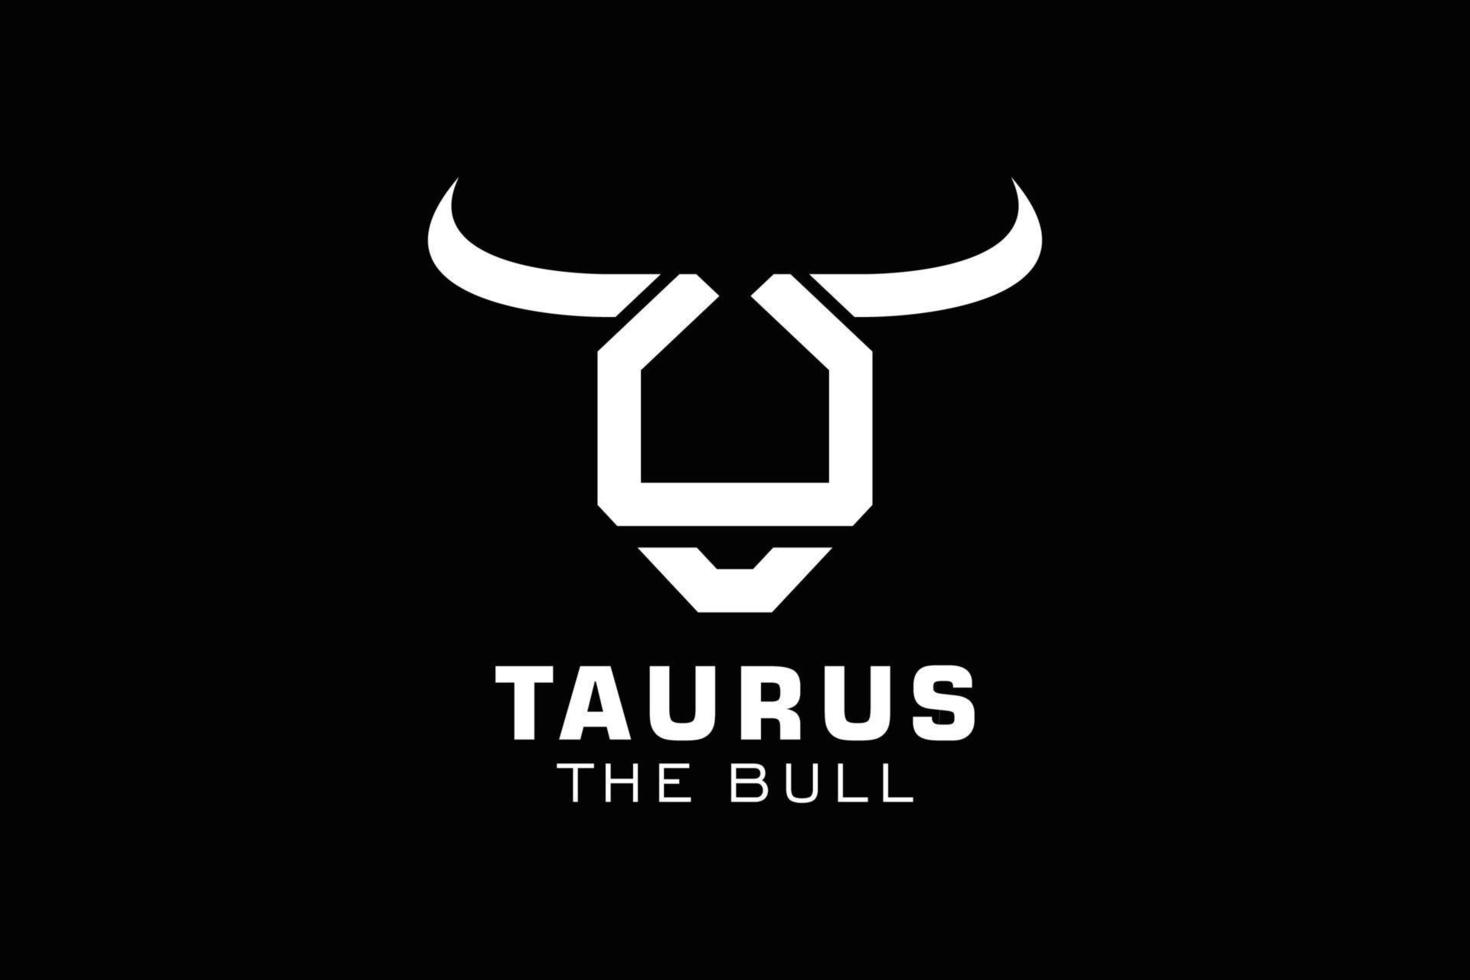 Letter U logo, Bull logo,head bull logo, monogram Logo Design Template Element vector